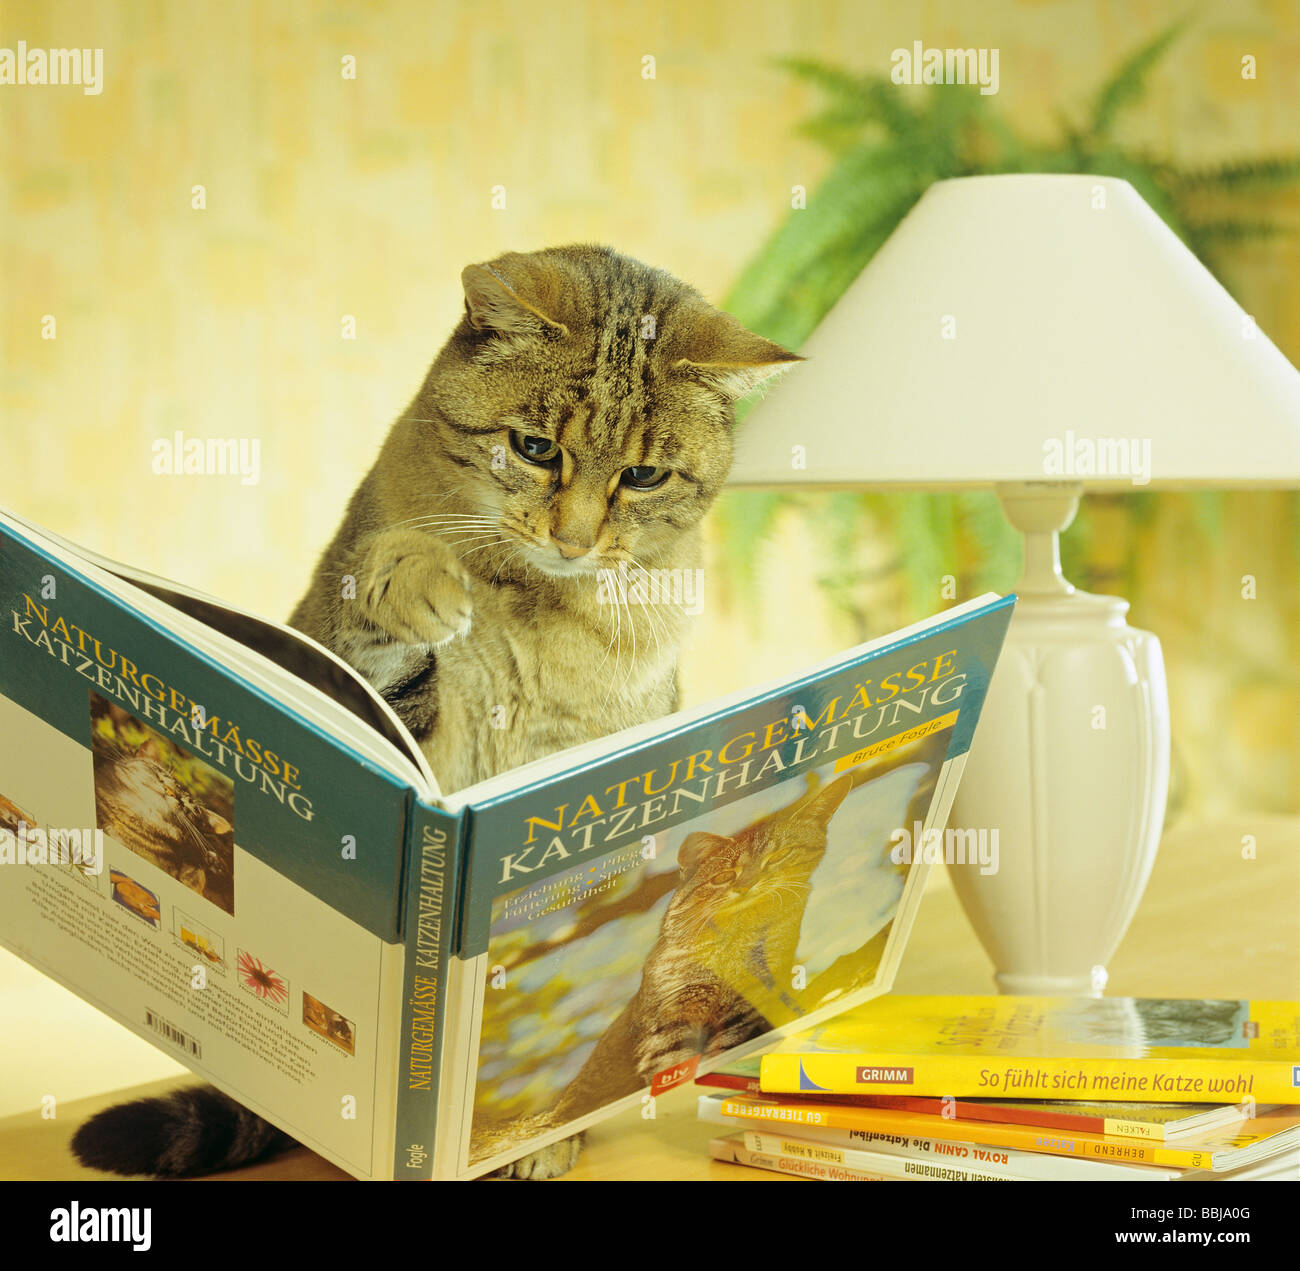 Libro gatto immagini e fotografie stock ad alta risoluzione - Alamy